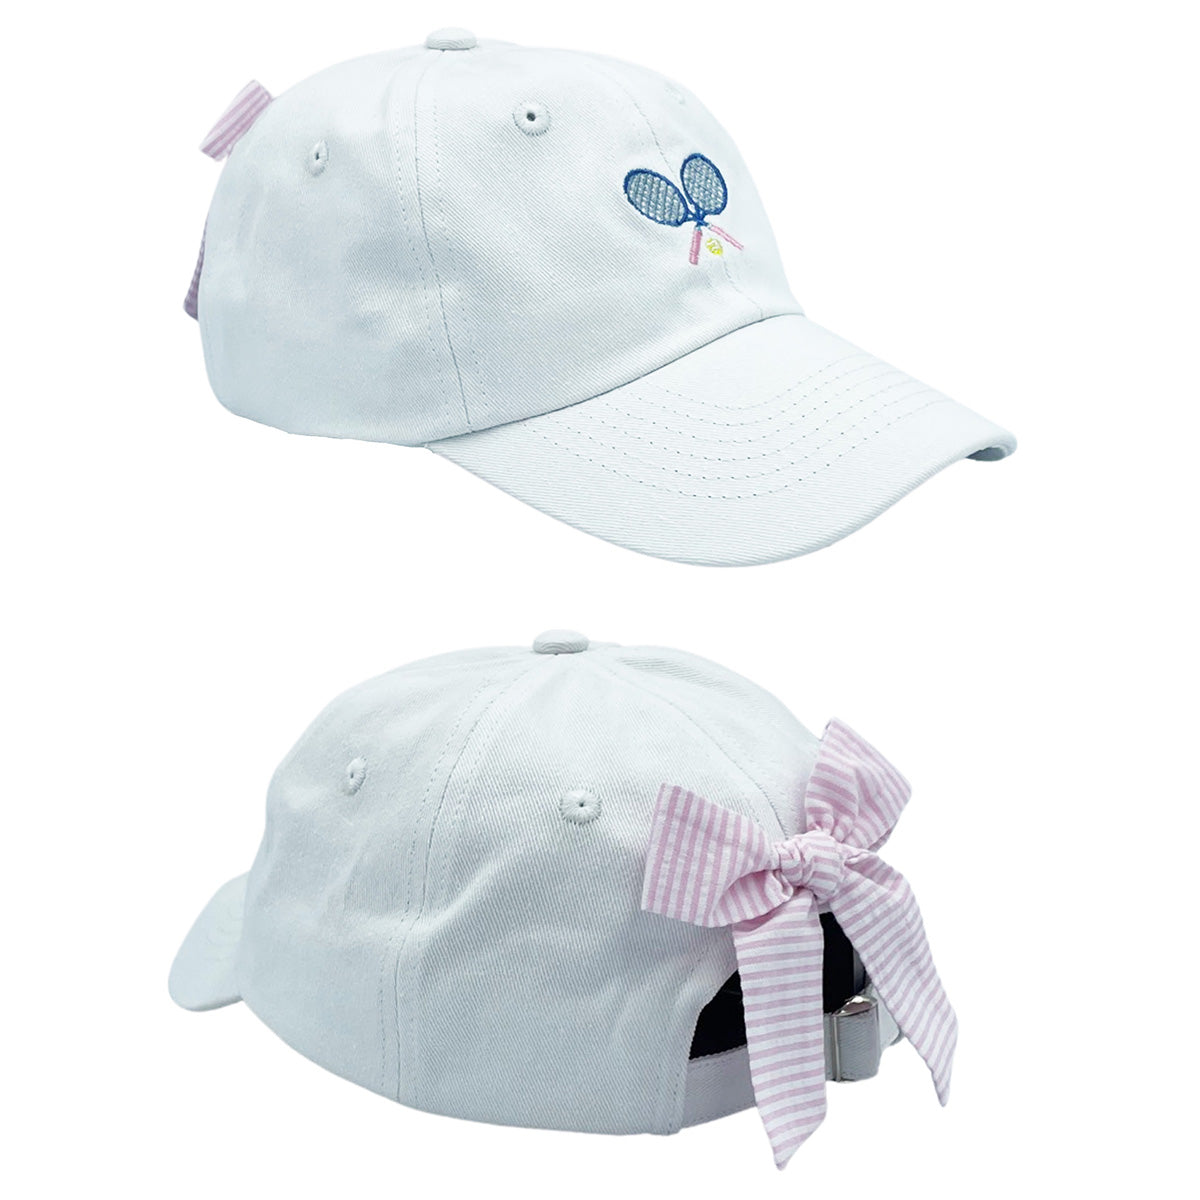 Tennis Racquets on Winnie White Toddler Girl Hat Pink Seersucker Bow